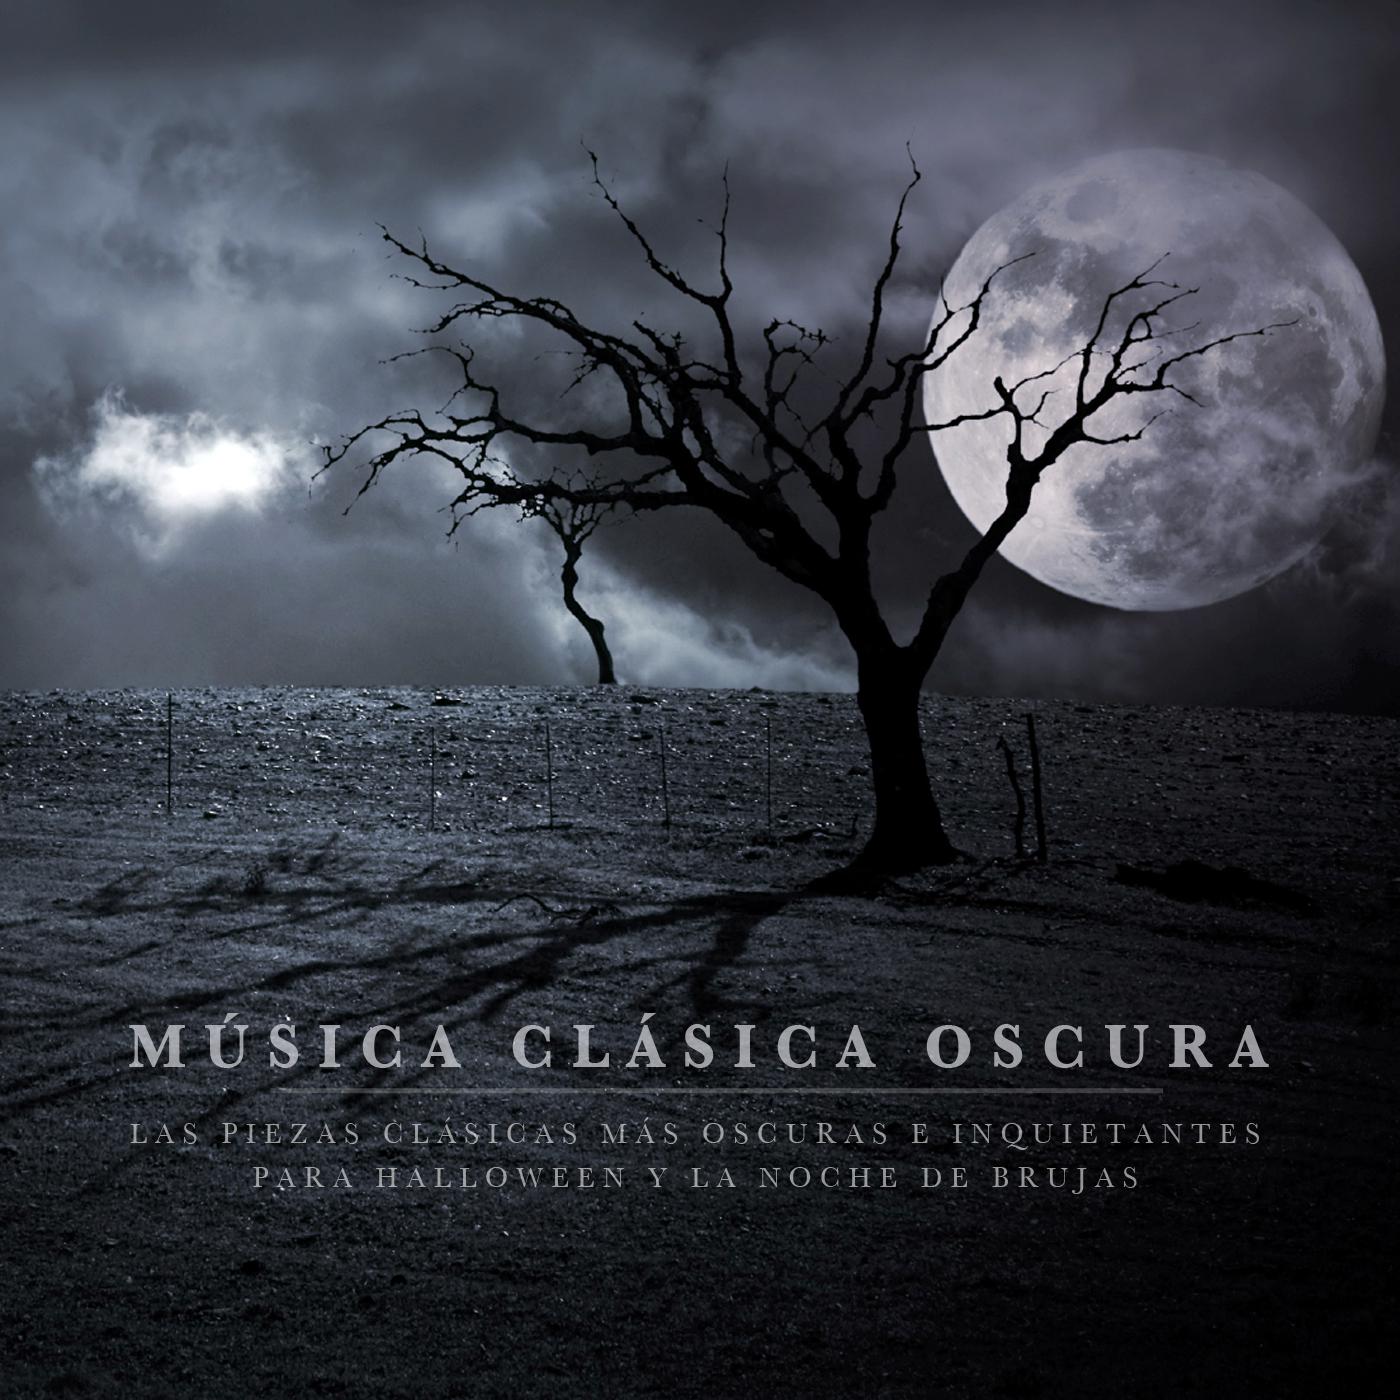 Música Clásica Oscura: Las piezas clásicas más oscuras e inquietantes para Halloween y la Noche de Brujas